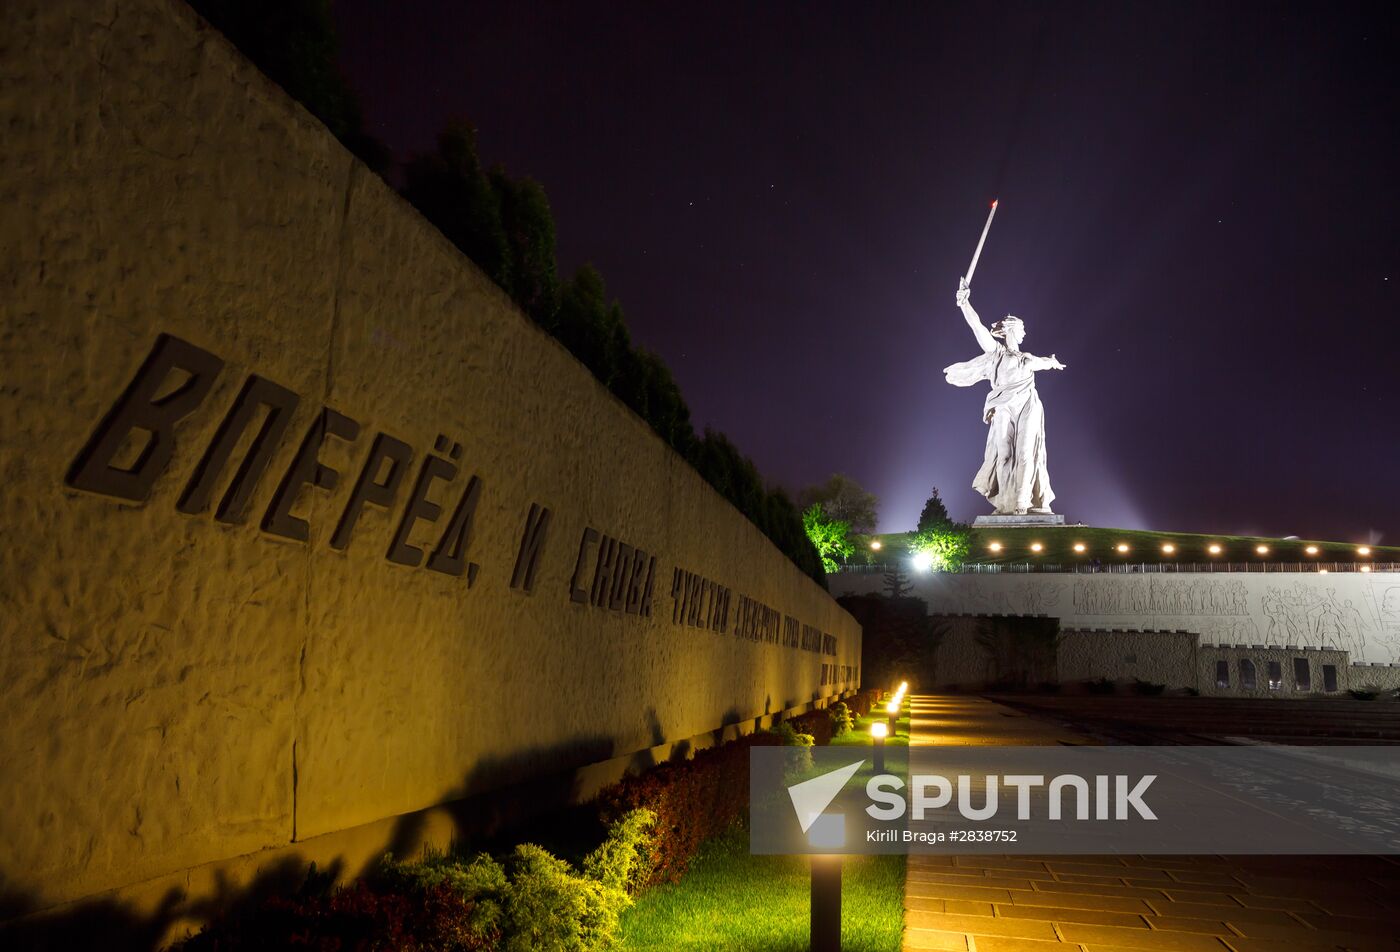 Mamyev Kurgan Memorial to Heroes of Battle of Stalingrad